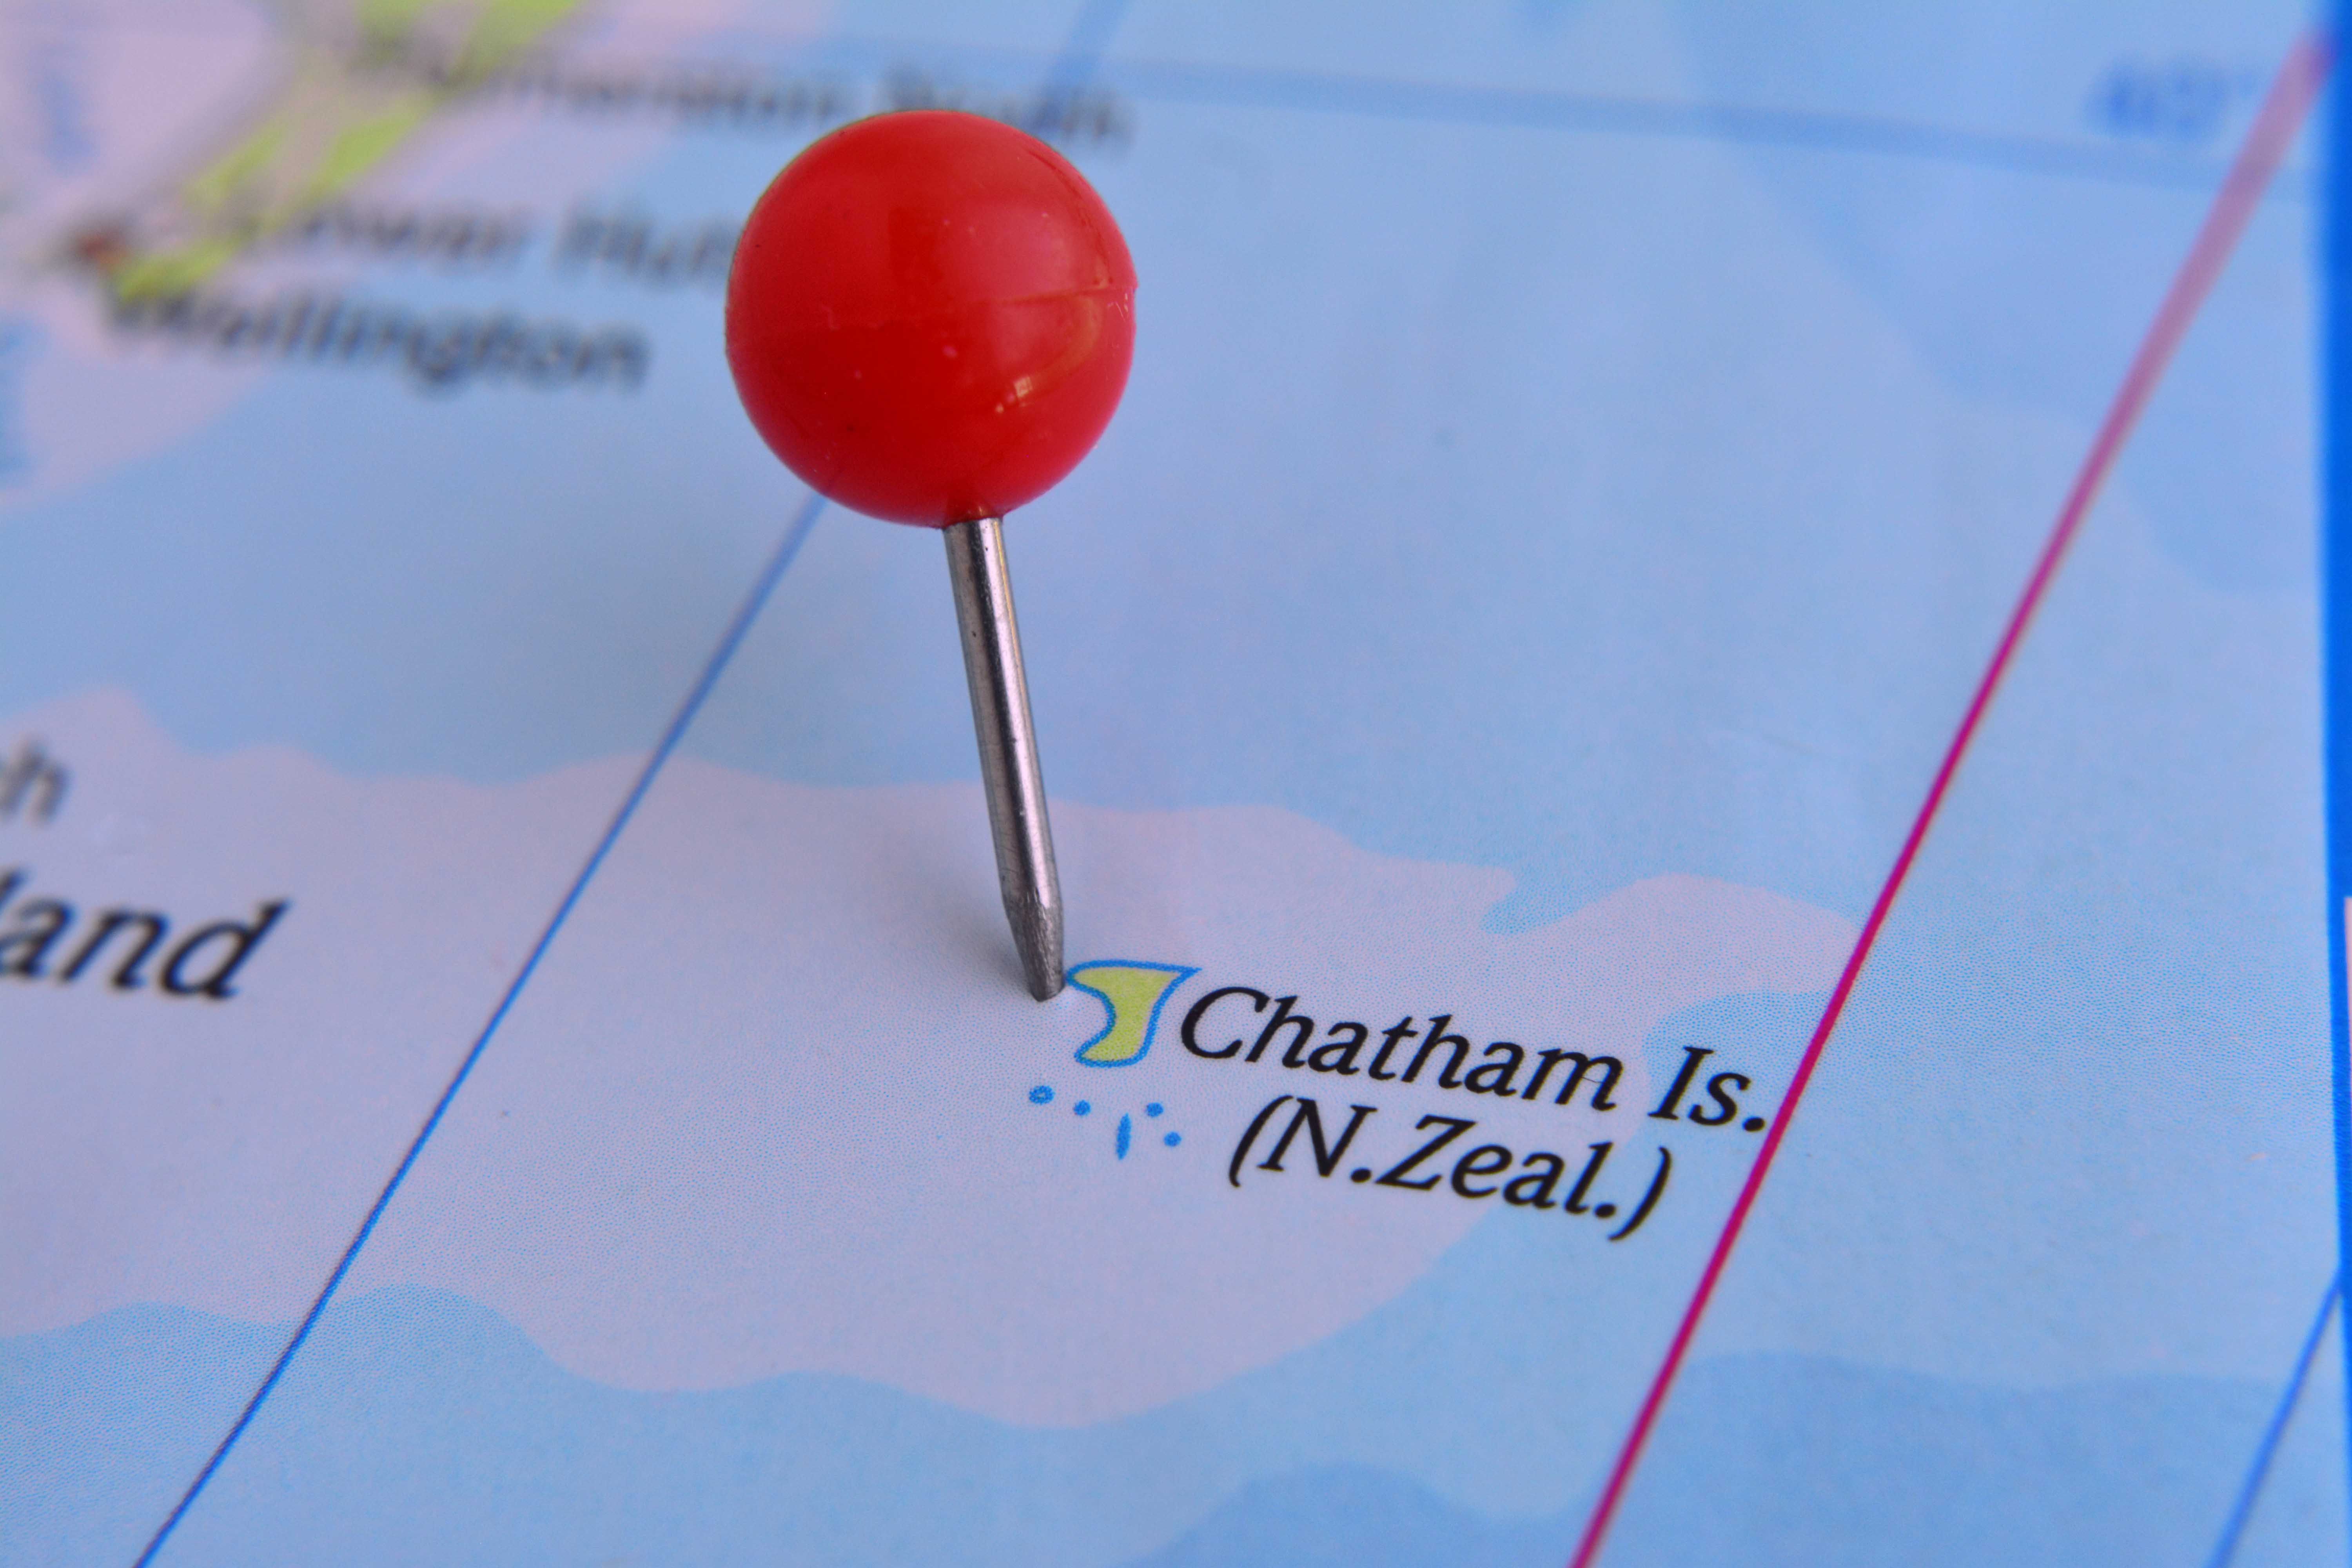 Las Islas Chatham evocan visiones de una tierra salvaje y remota unida al océano. Forman parte del territorio de Nueva Zelanda